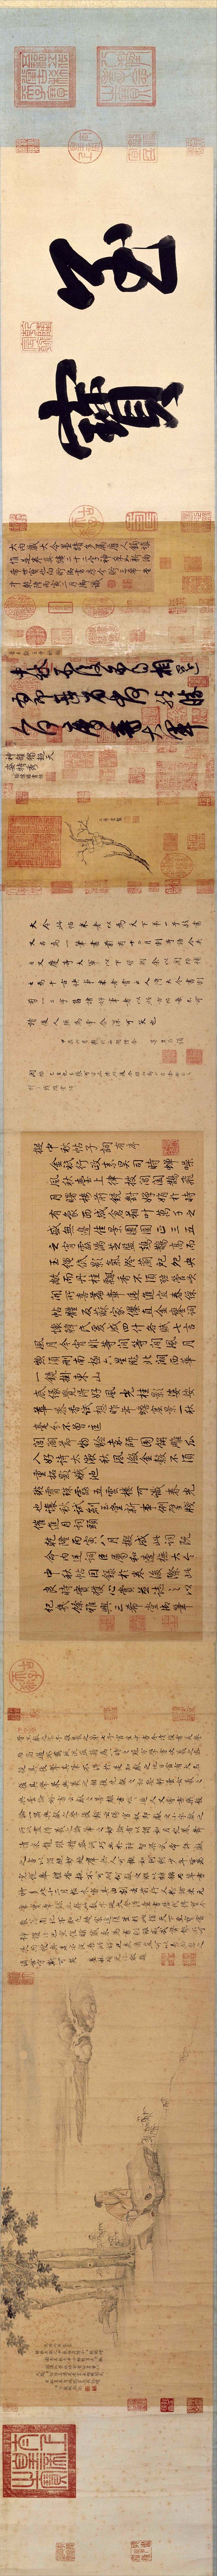 王献之草书《中秋帖》卷-北京故宫博物院藏(图2)